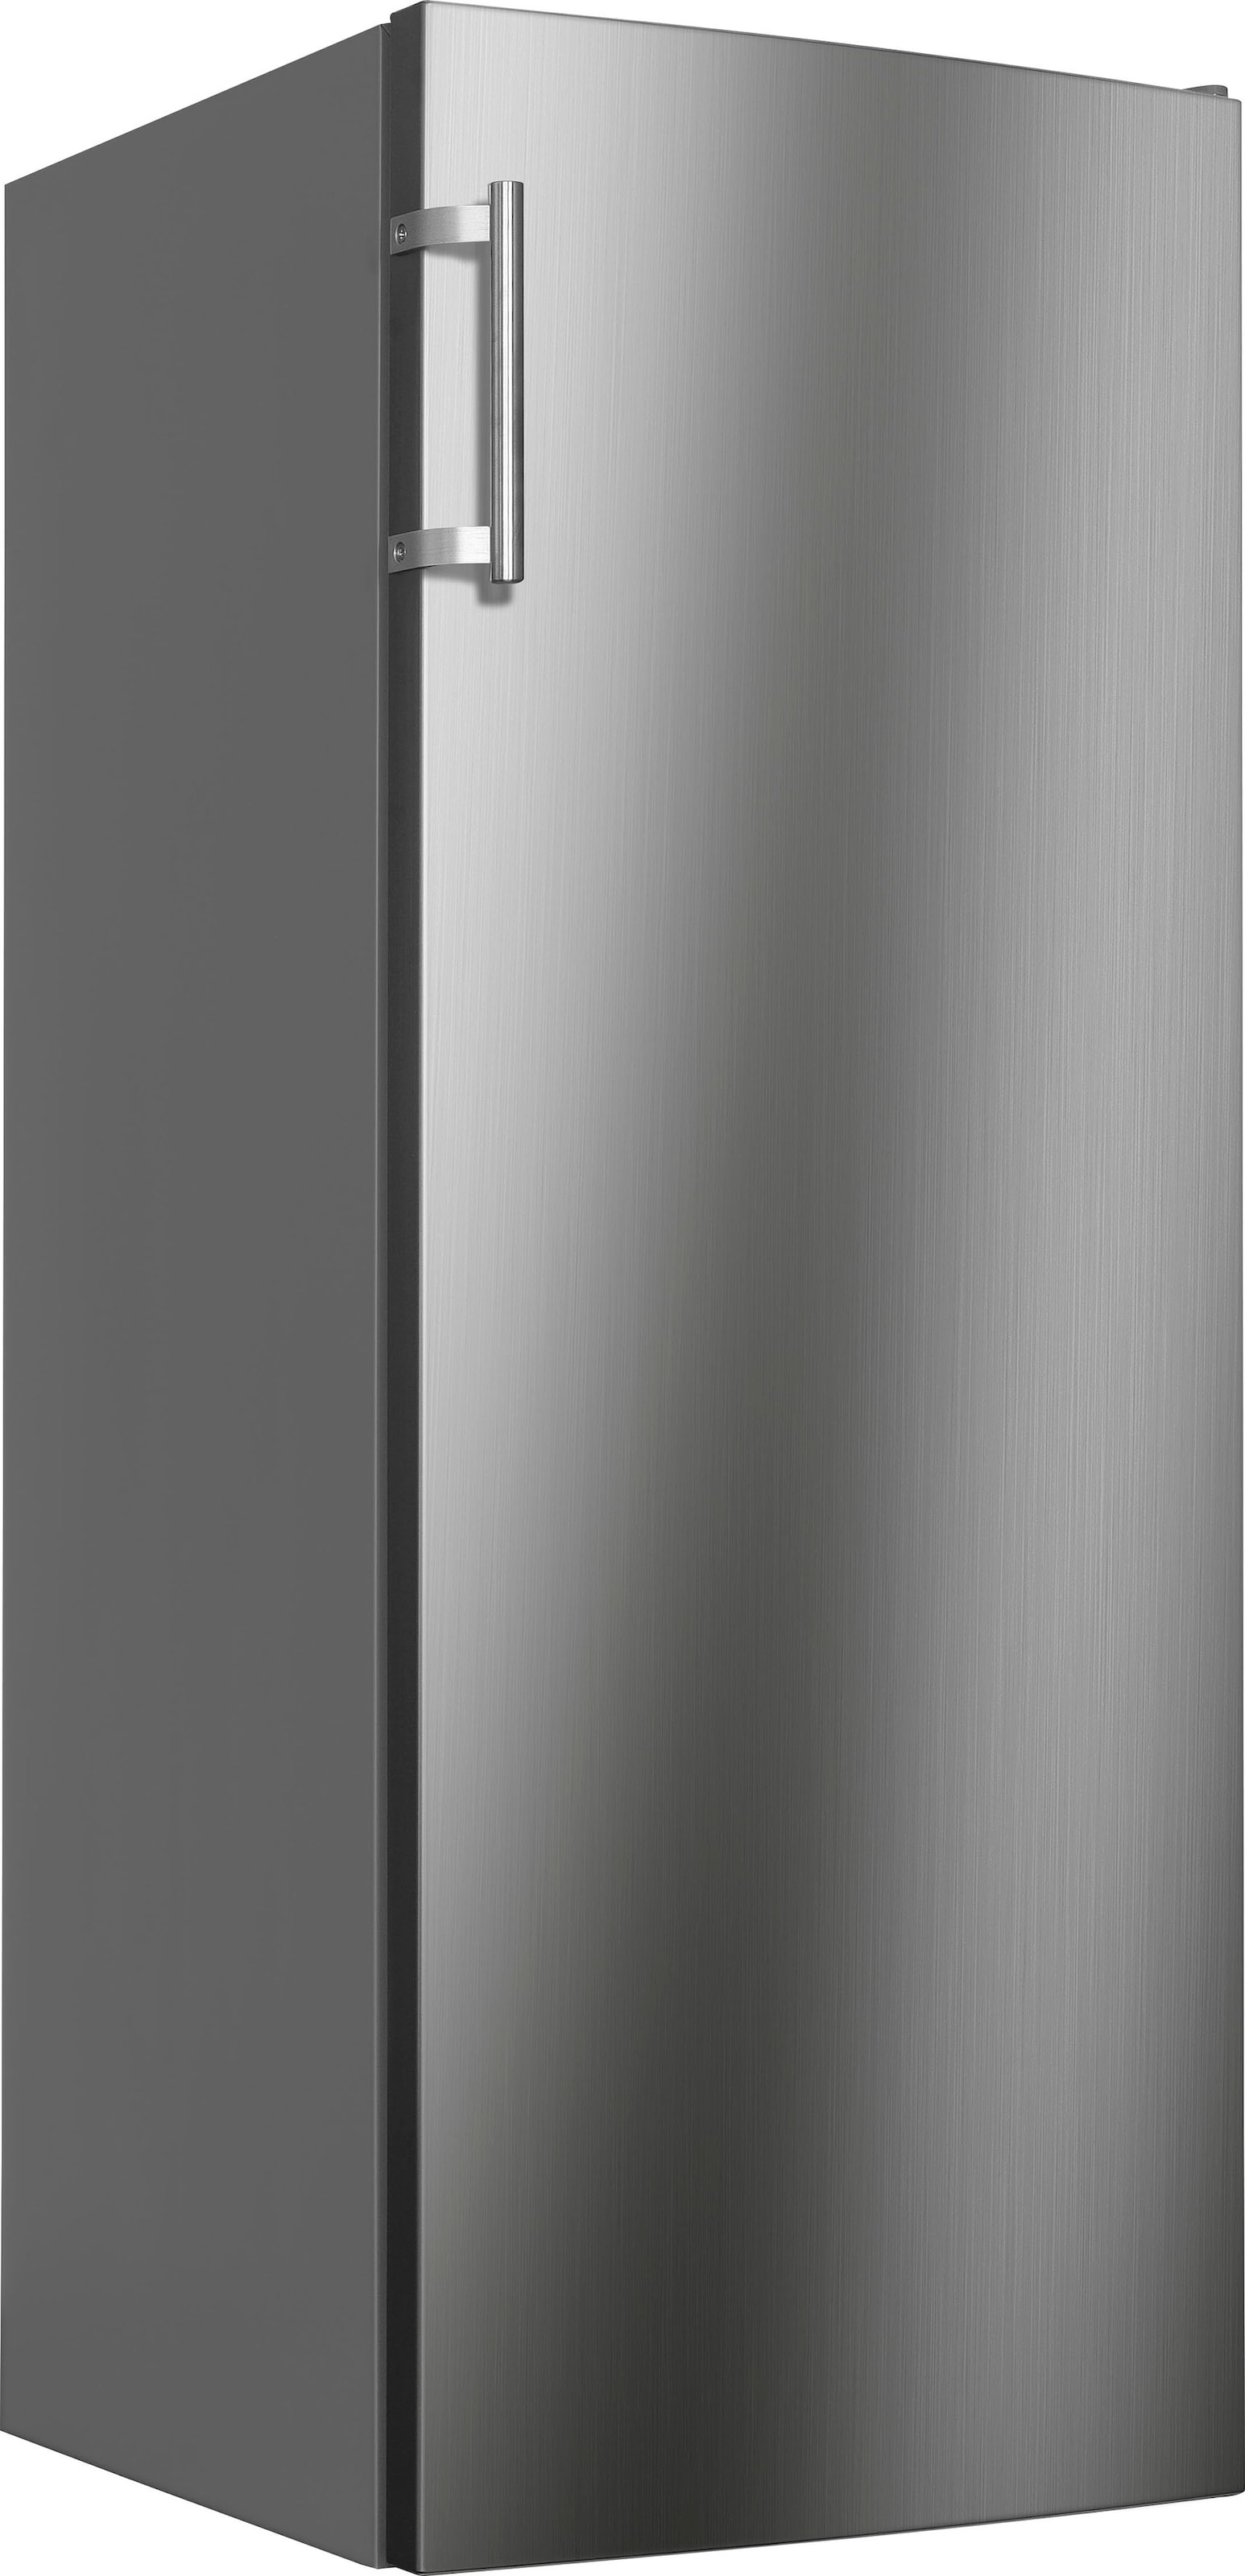 Hanseatic Gefrierschrank, 143 cm hoch, 54 cm breit, NoFrost, Schnellgefrierfunktion, Türalarm